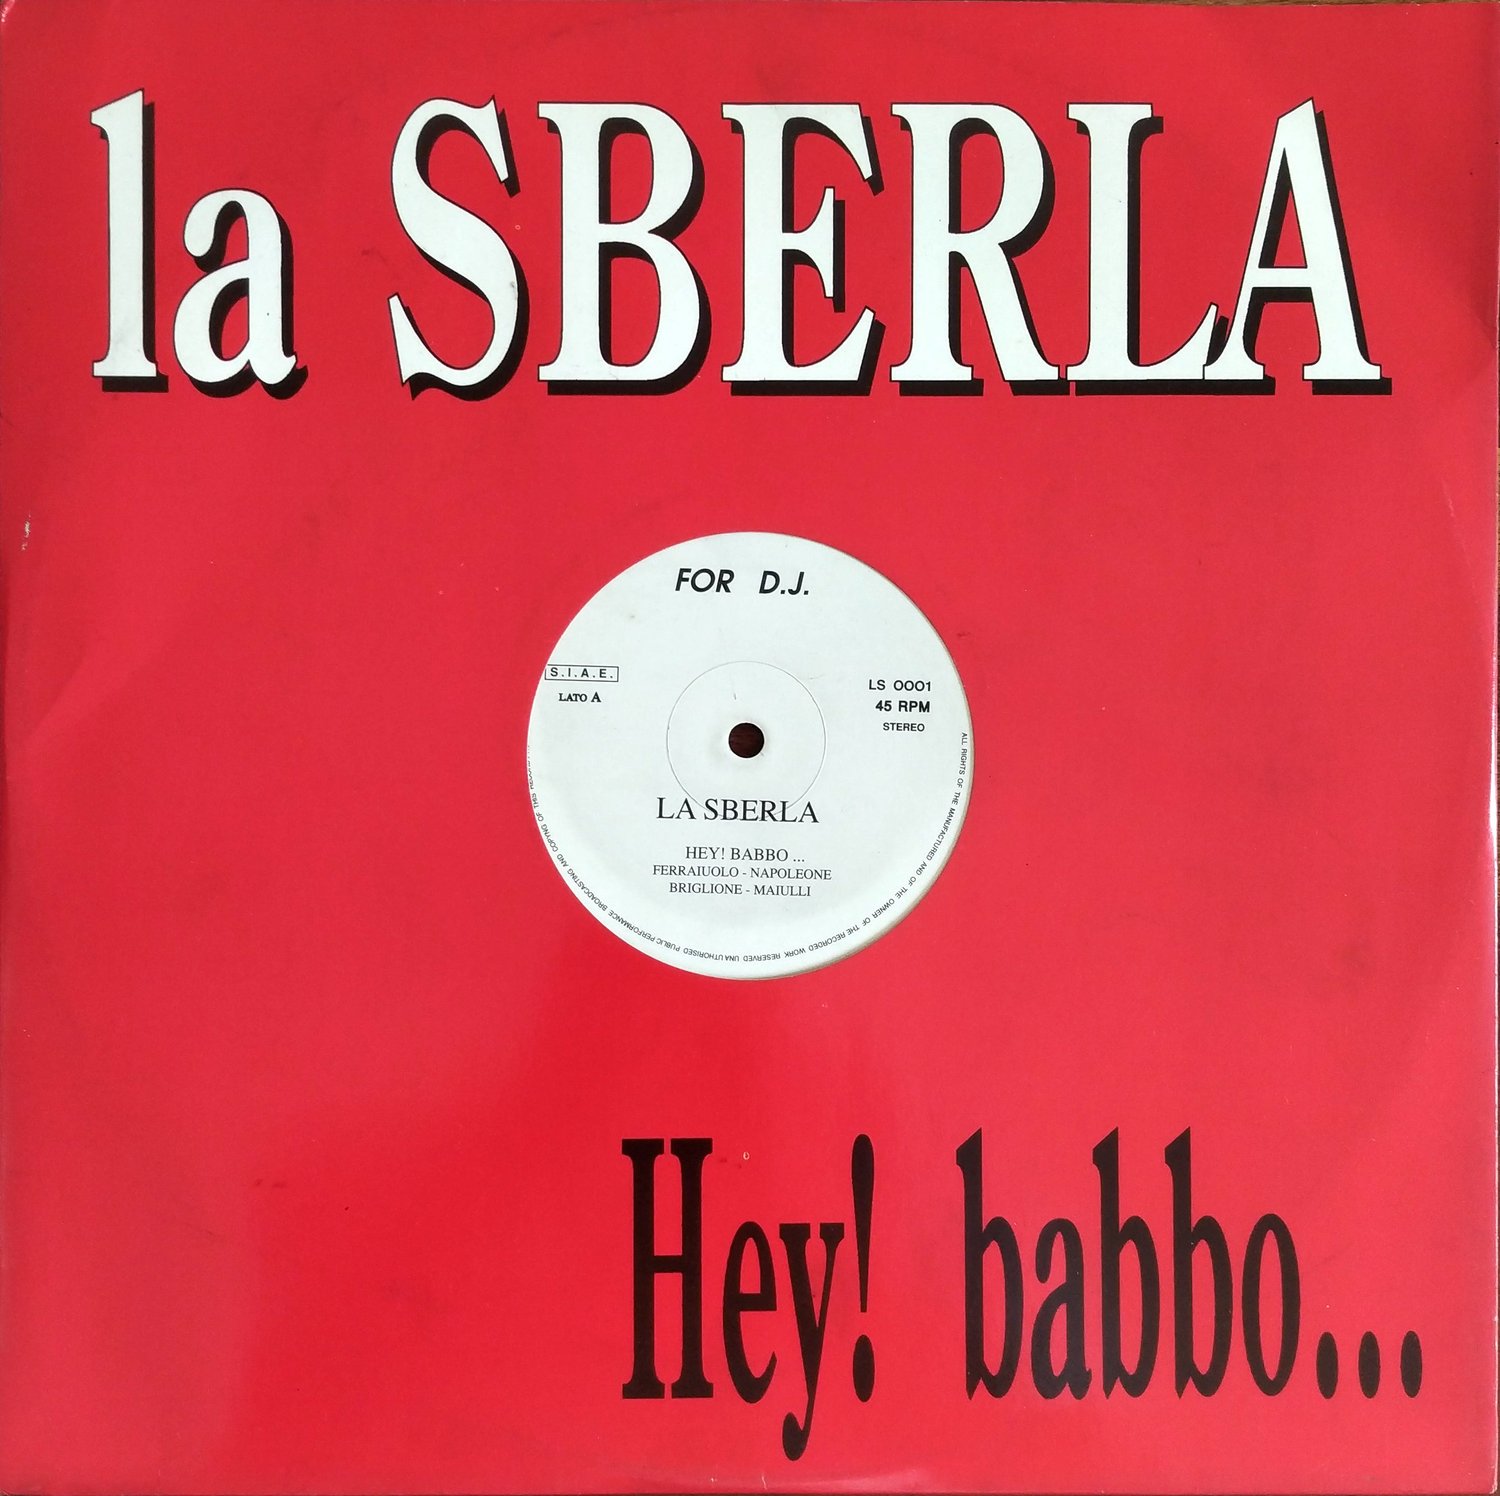 La Sberla – Hey! Babbo...